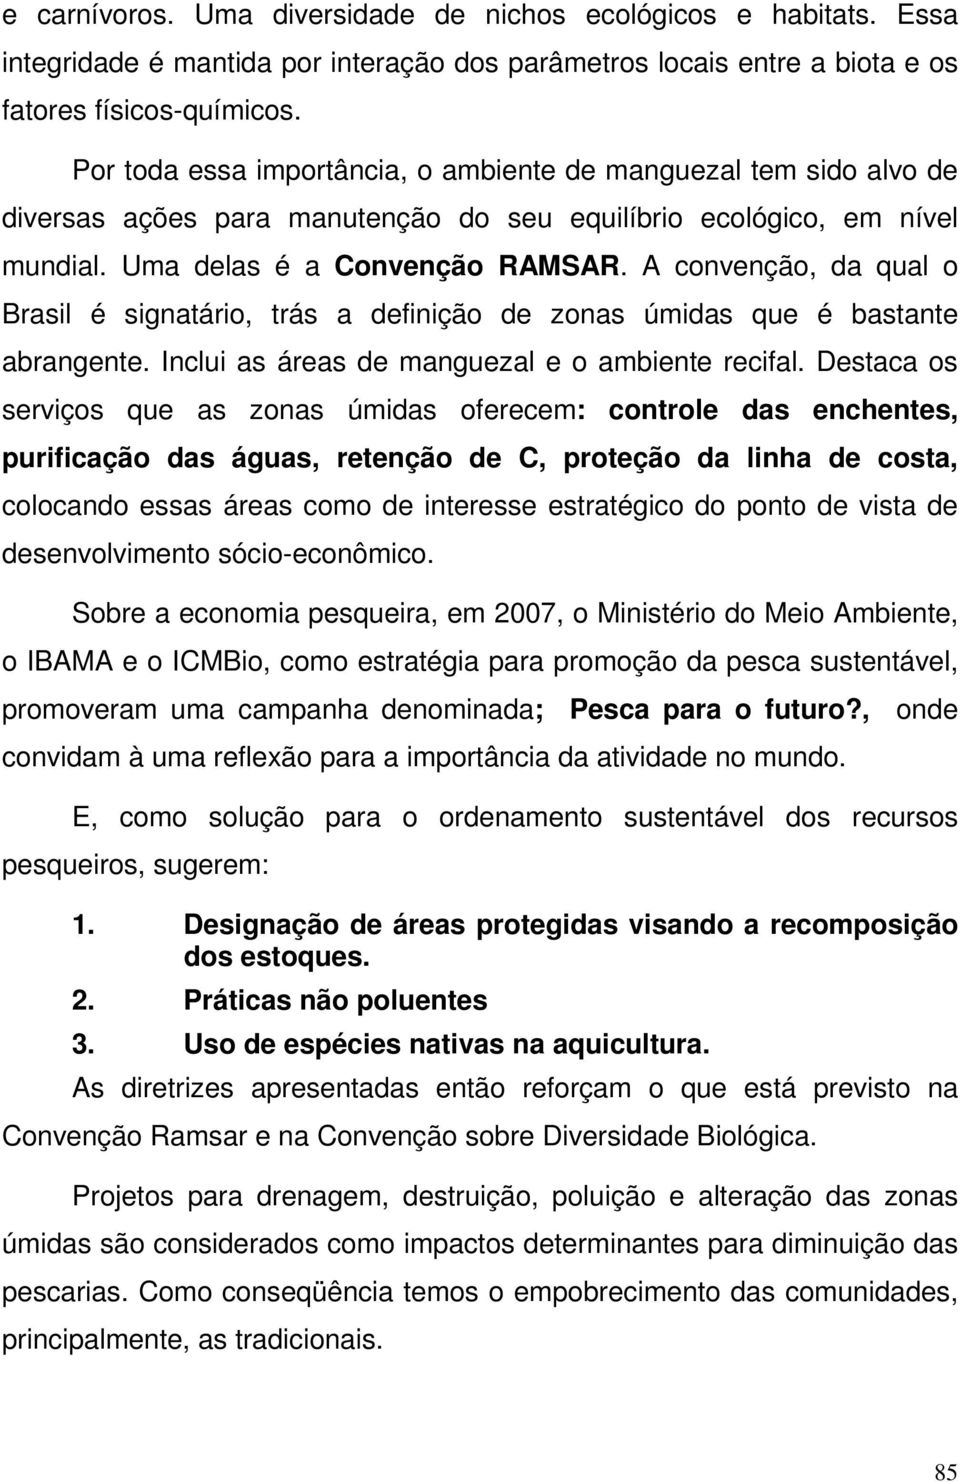 A convenção, da qual o Brasil é signatário, trás a definição de zonas úmidas que é bastante abrangente. Inclui as áreas de manguezal e o ambiente recifal.